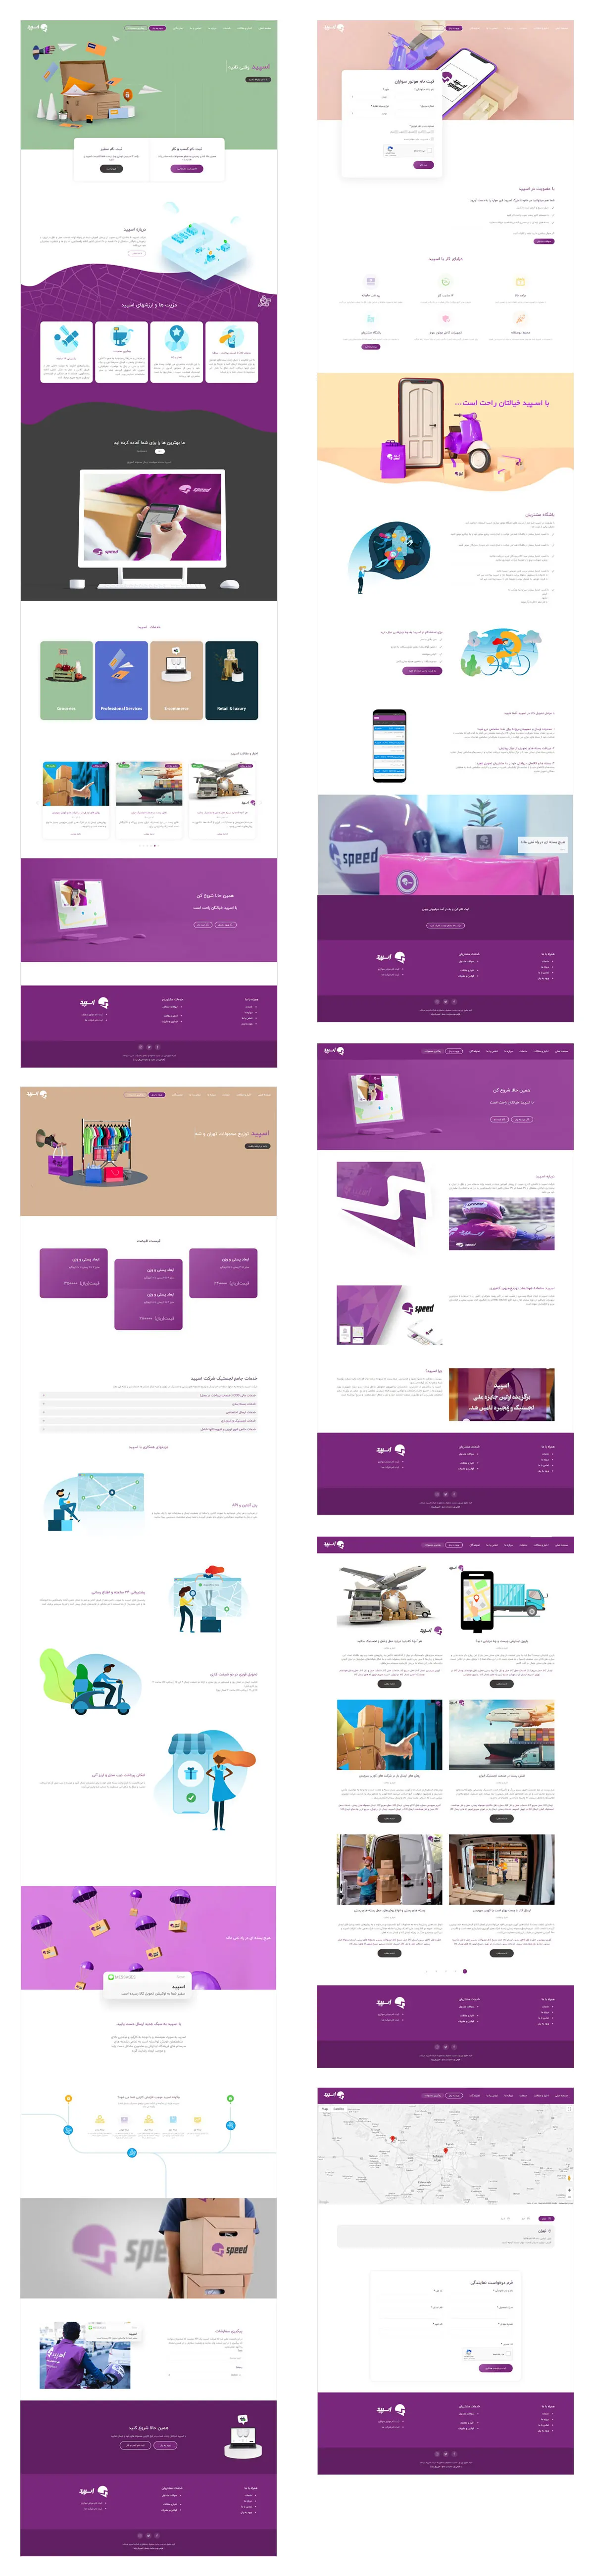 شرکت اسپید برنامه نویسی و طراحی وب سایت | حسین دنیادیده